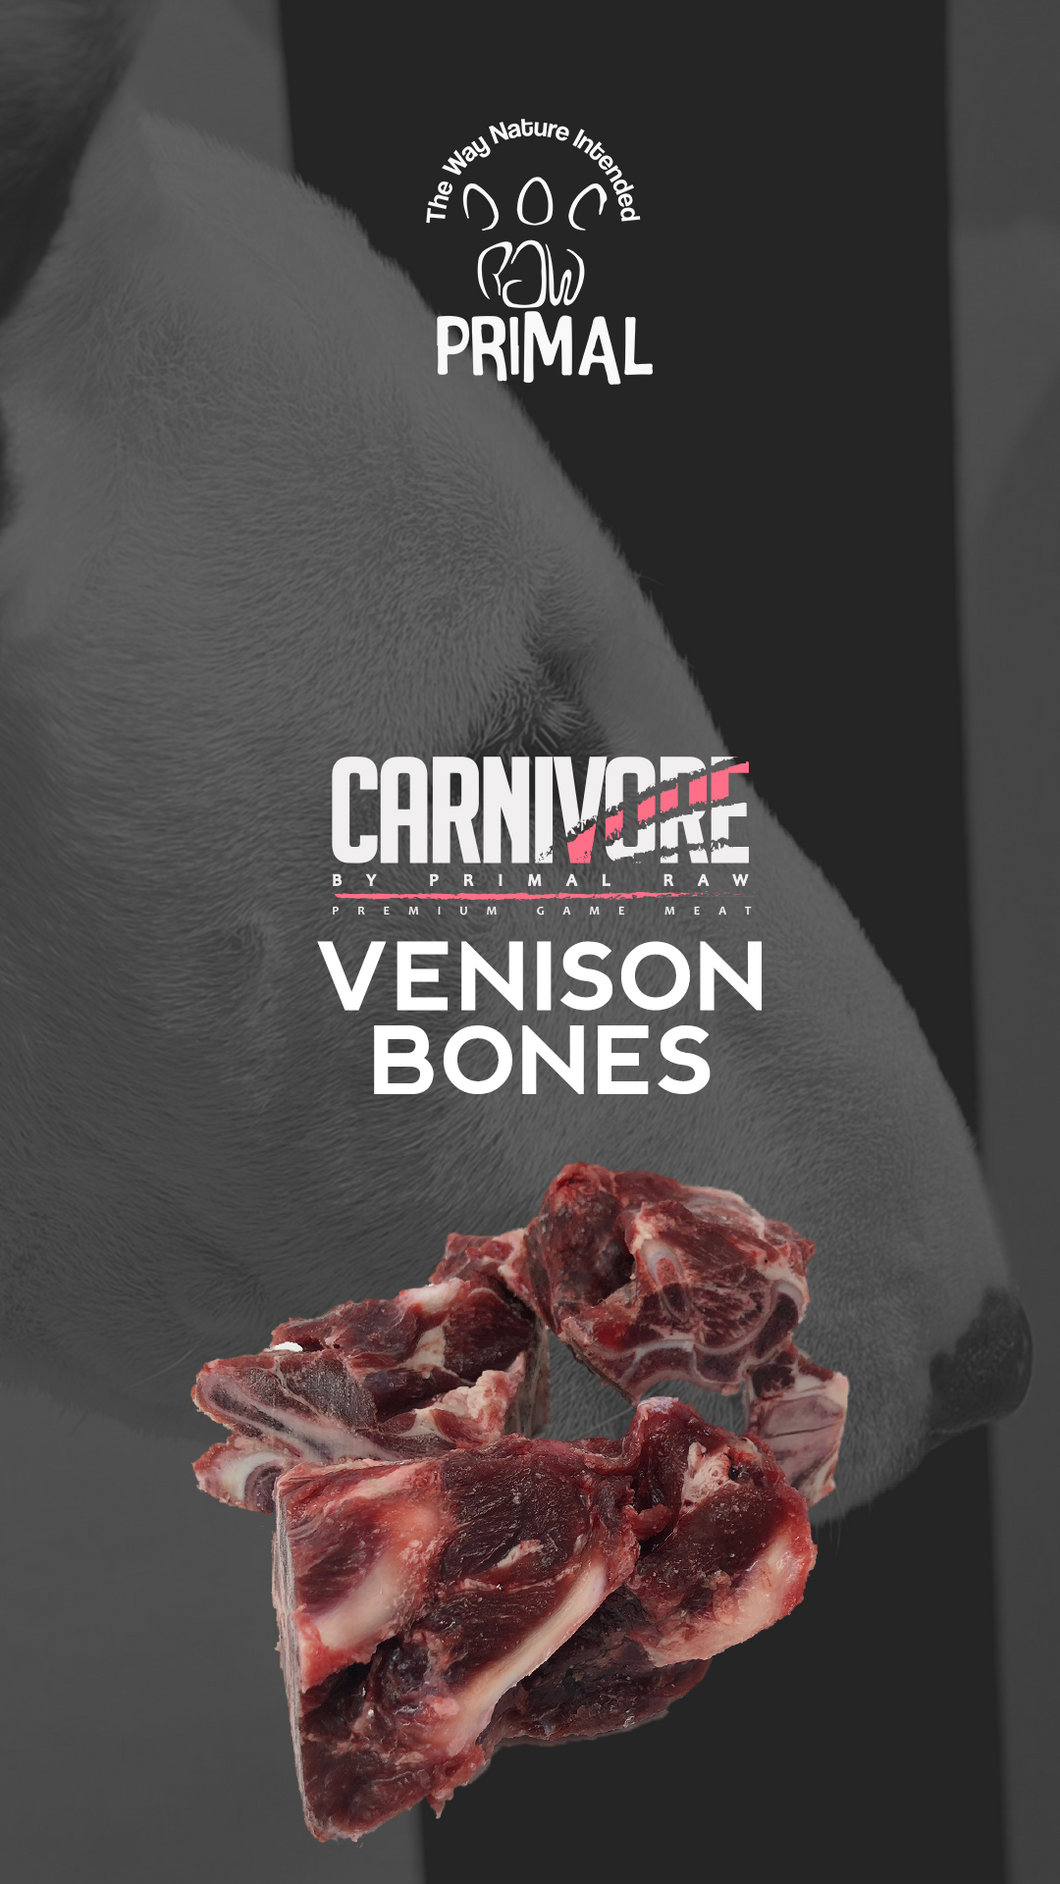 Venison Bones